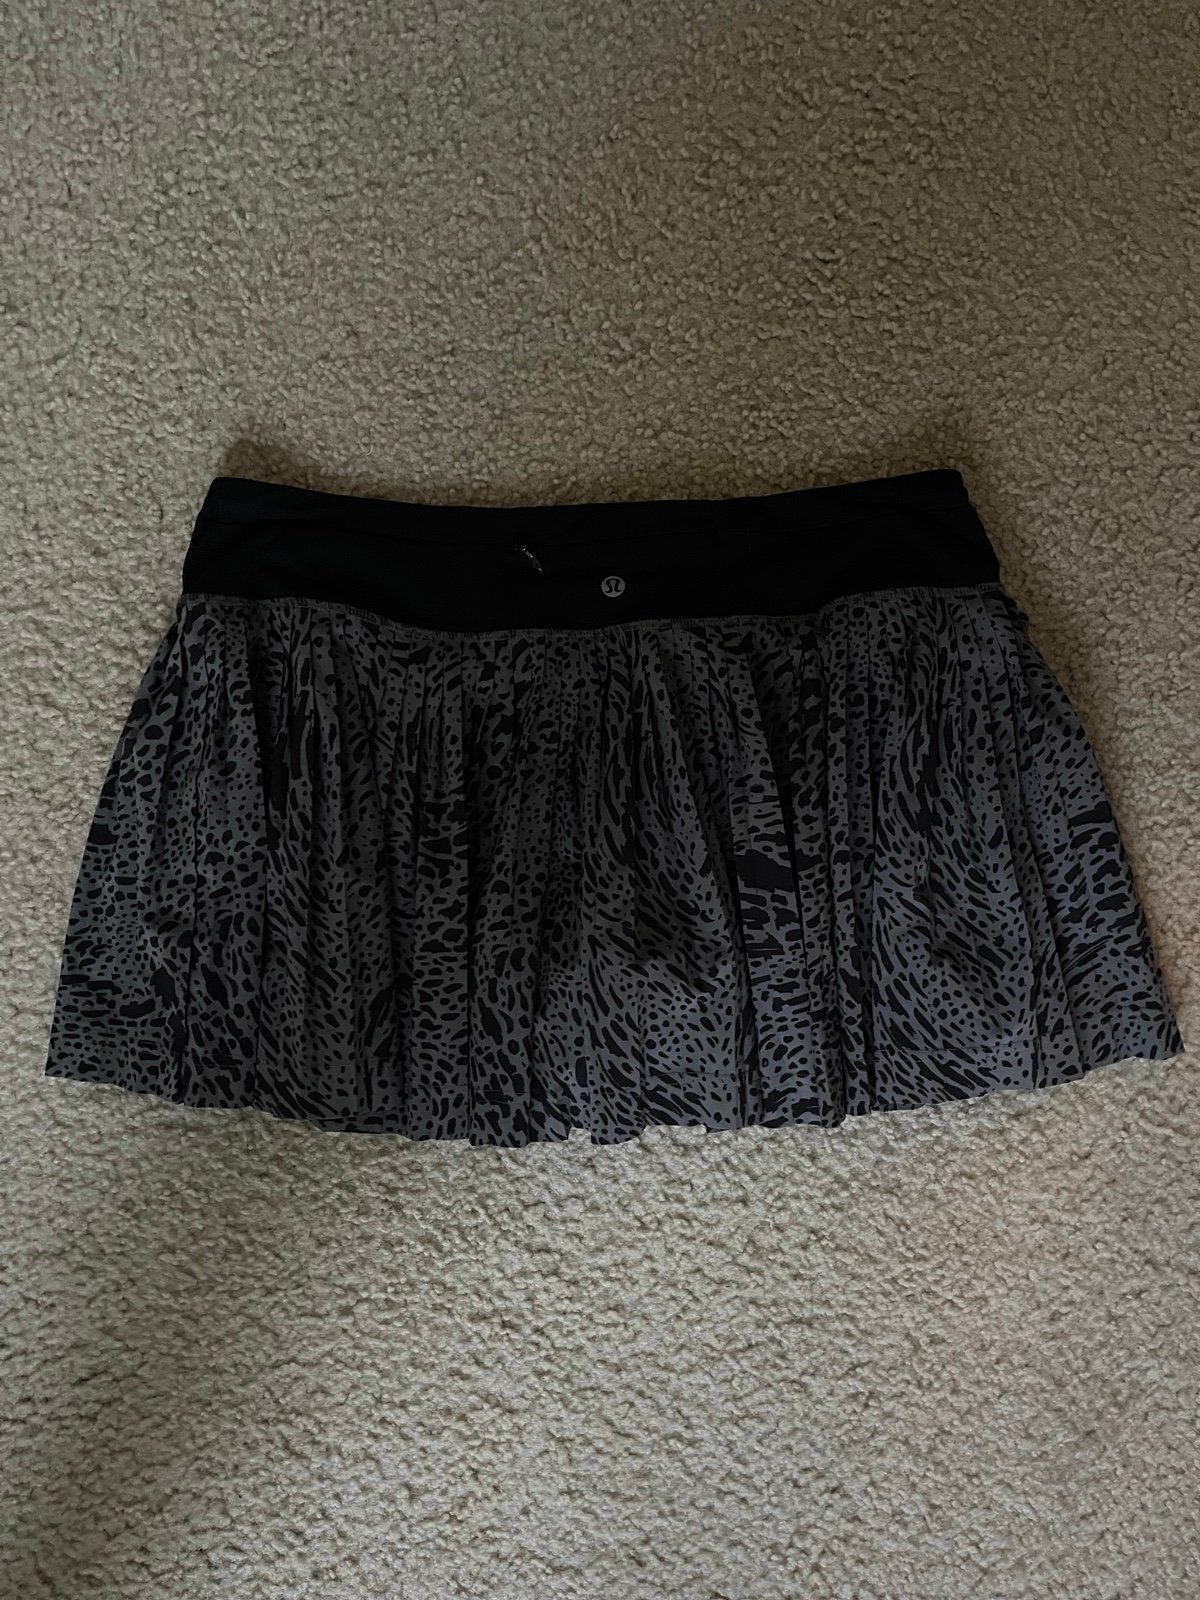 Special offer  Lululemon skirt Mo6Xk8fR2 Online Shop